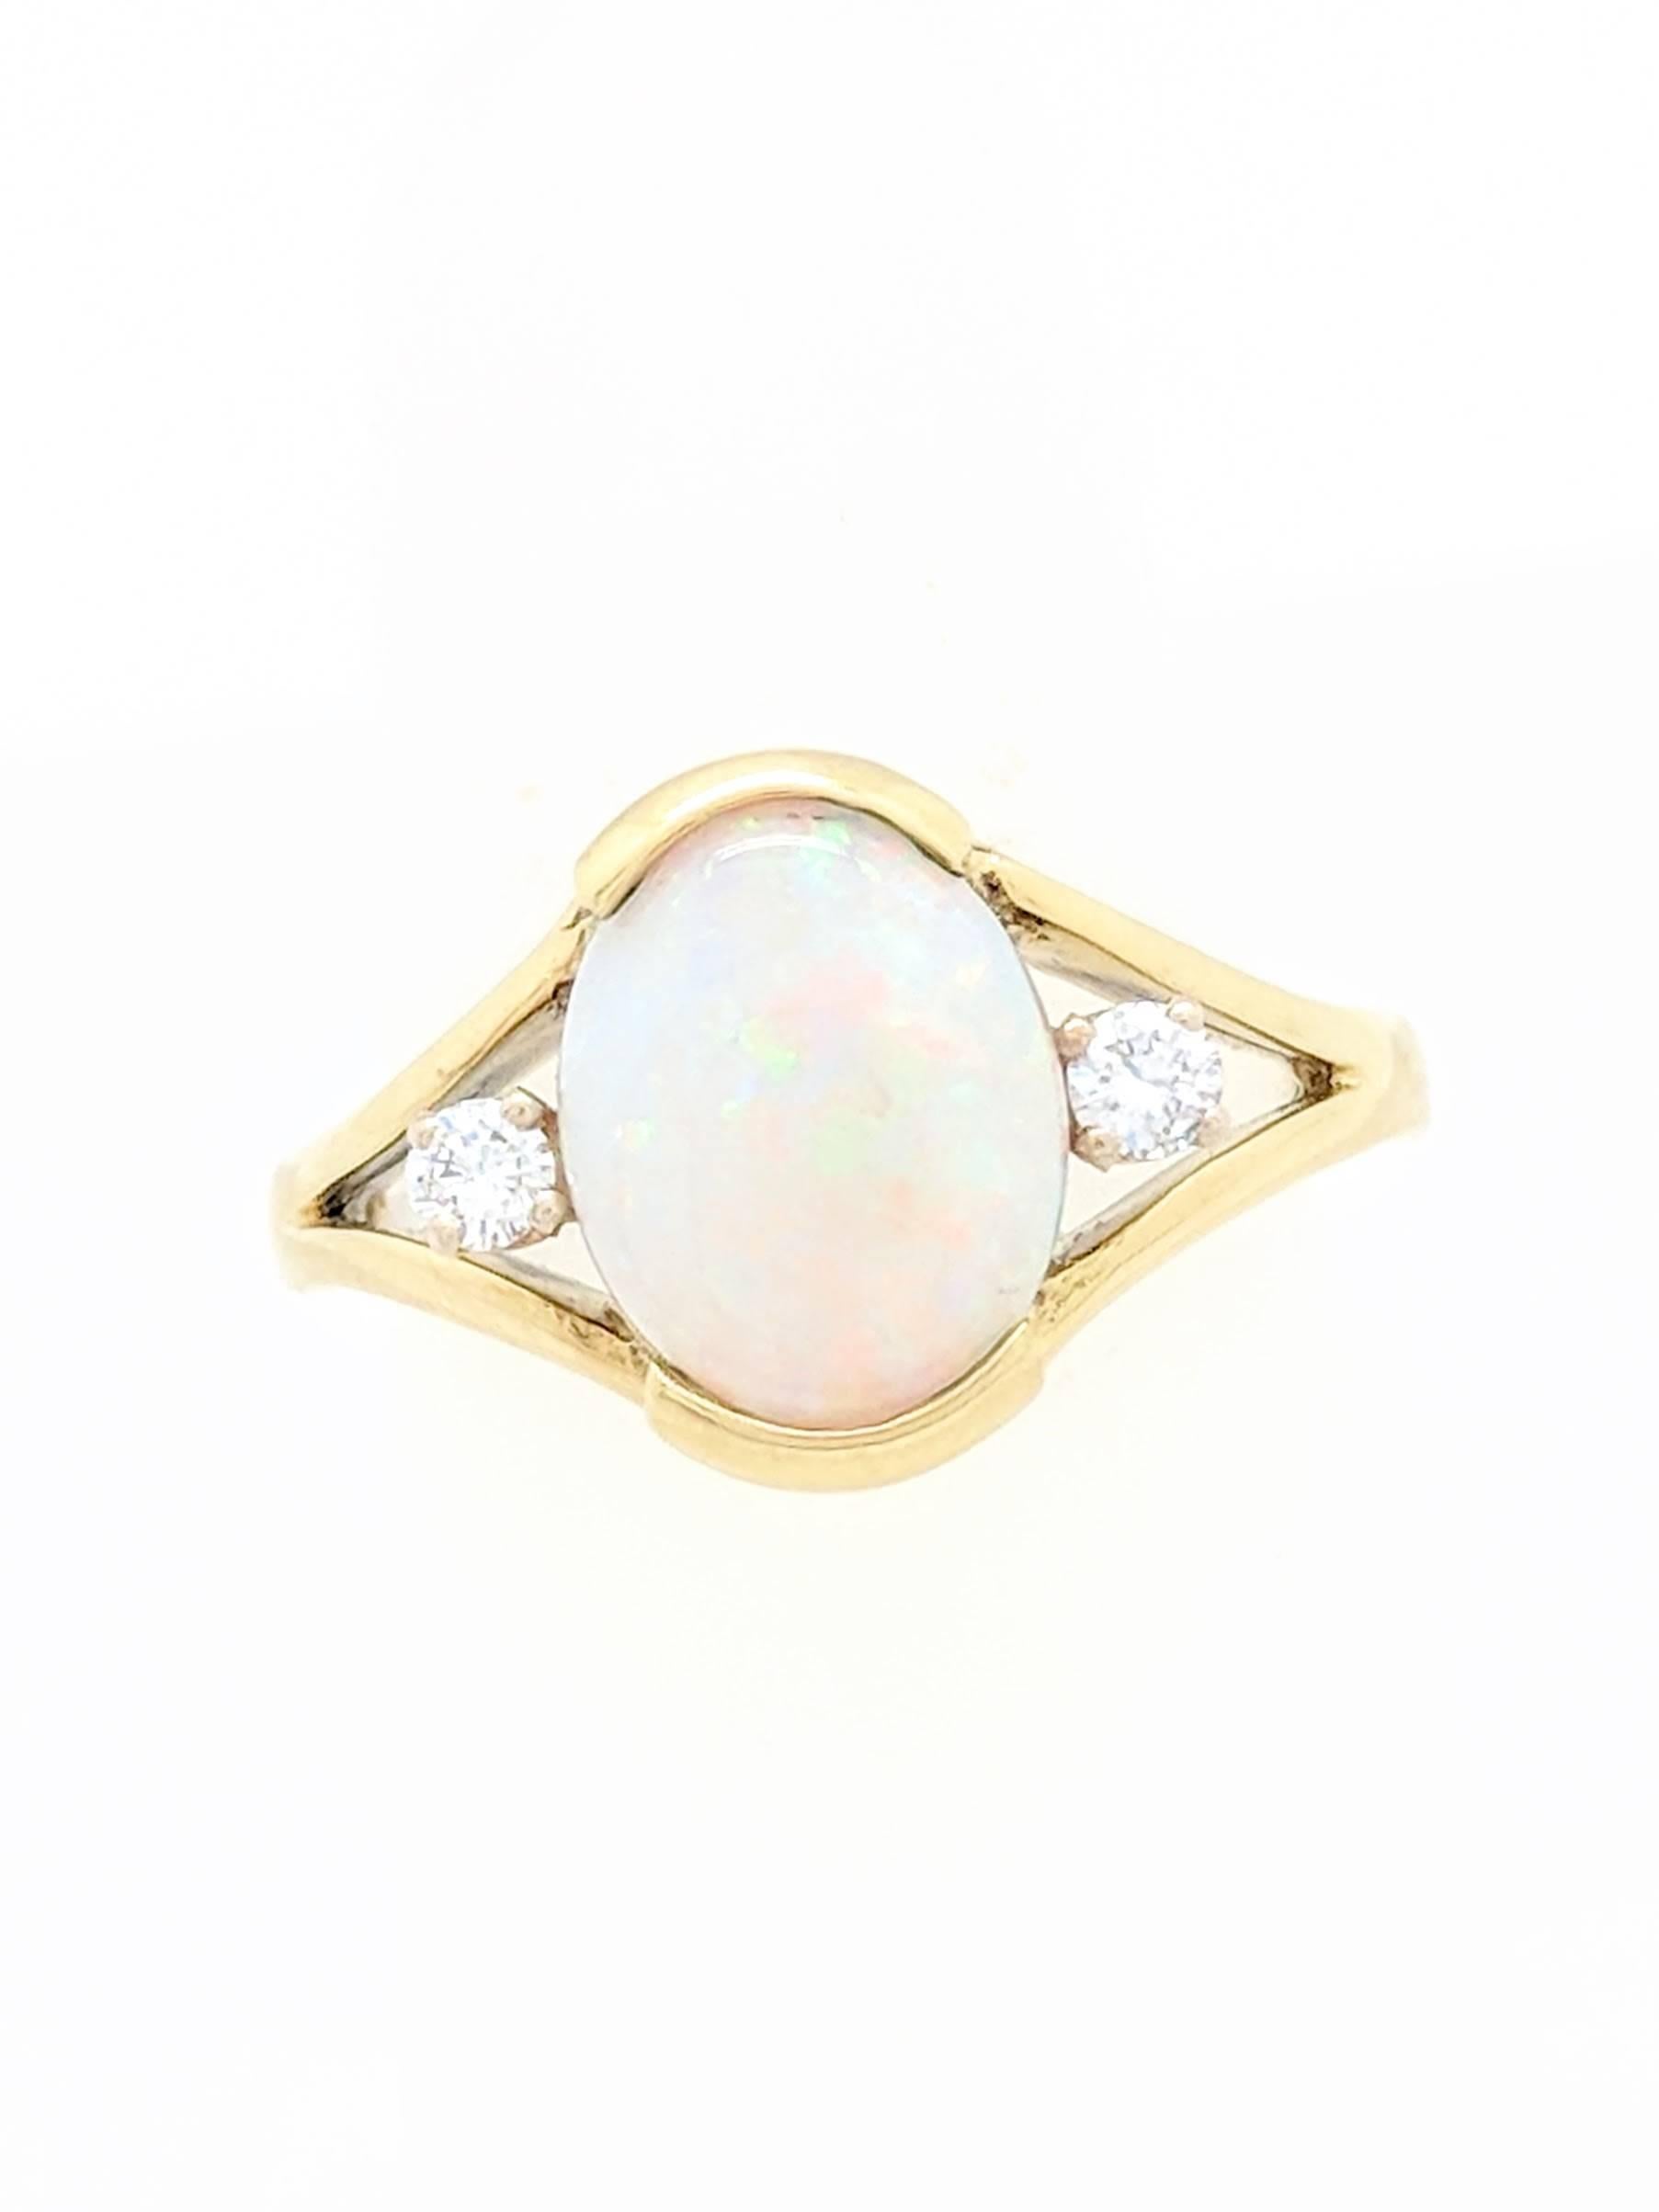 Oval Cut 18 Karat Yellow Gold 1.65 Carat Natural Opal and Diamond Ring